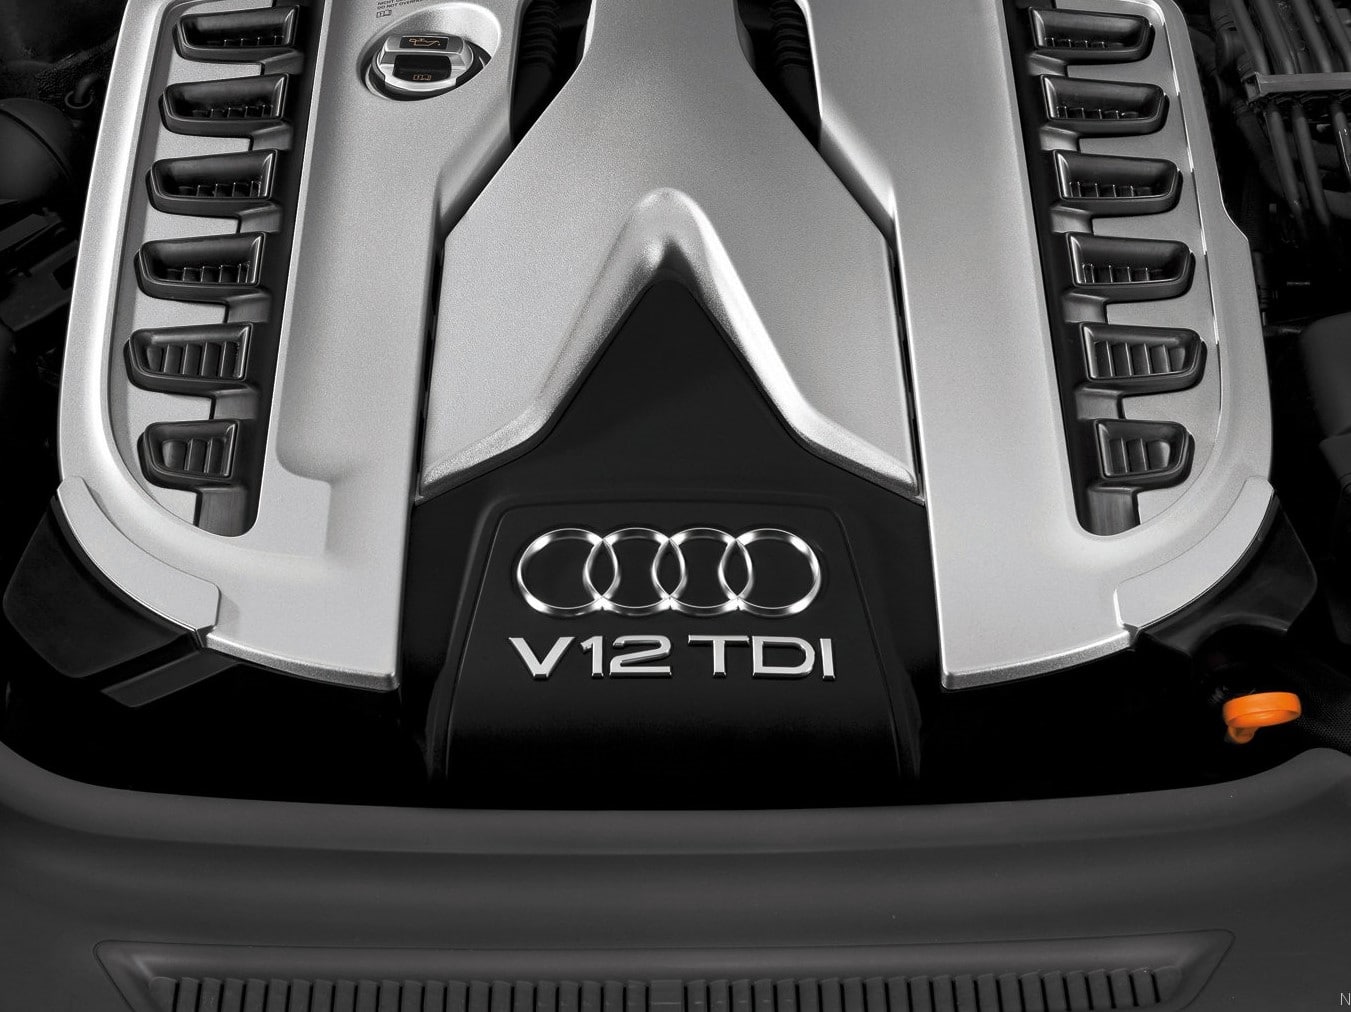 Audi Q7 - 12 cylindre